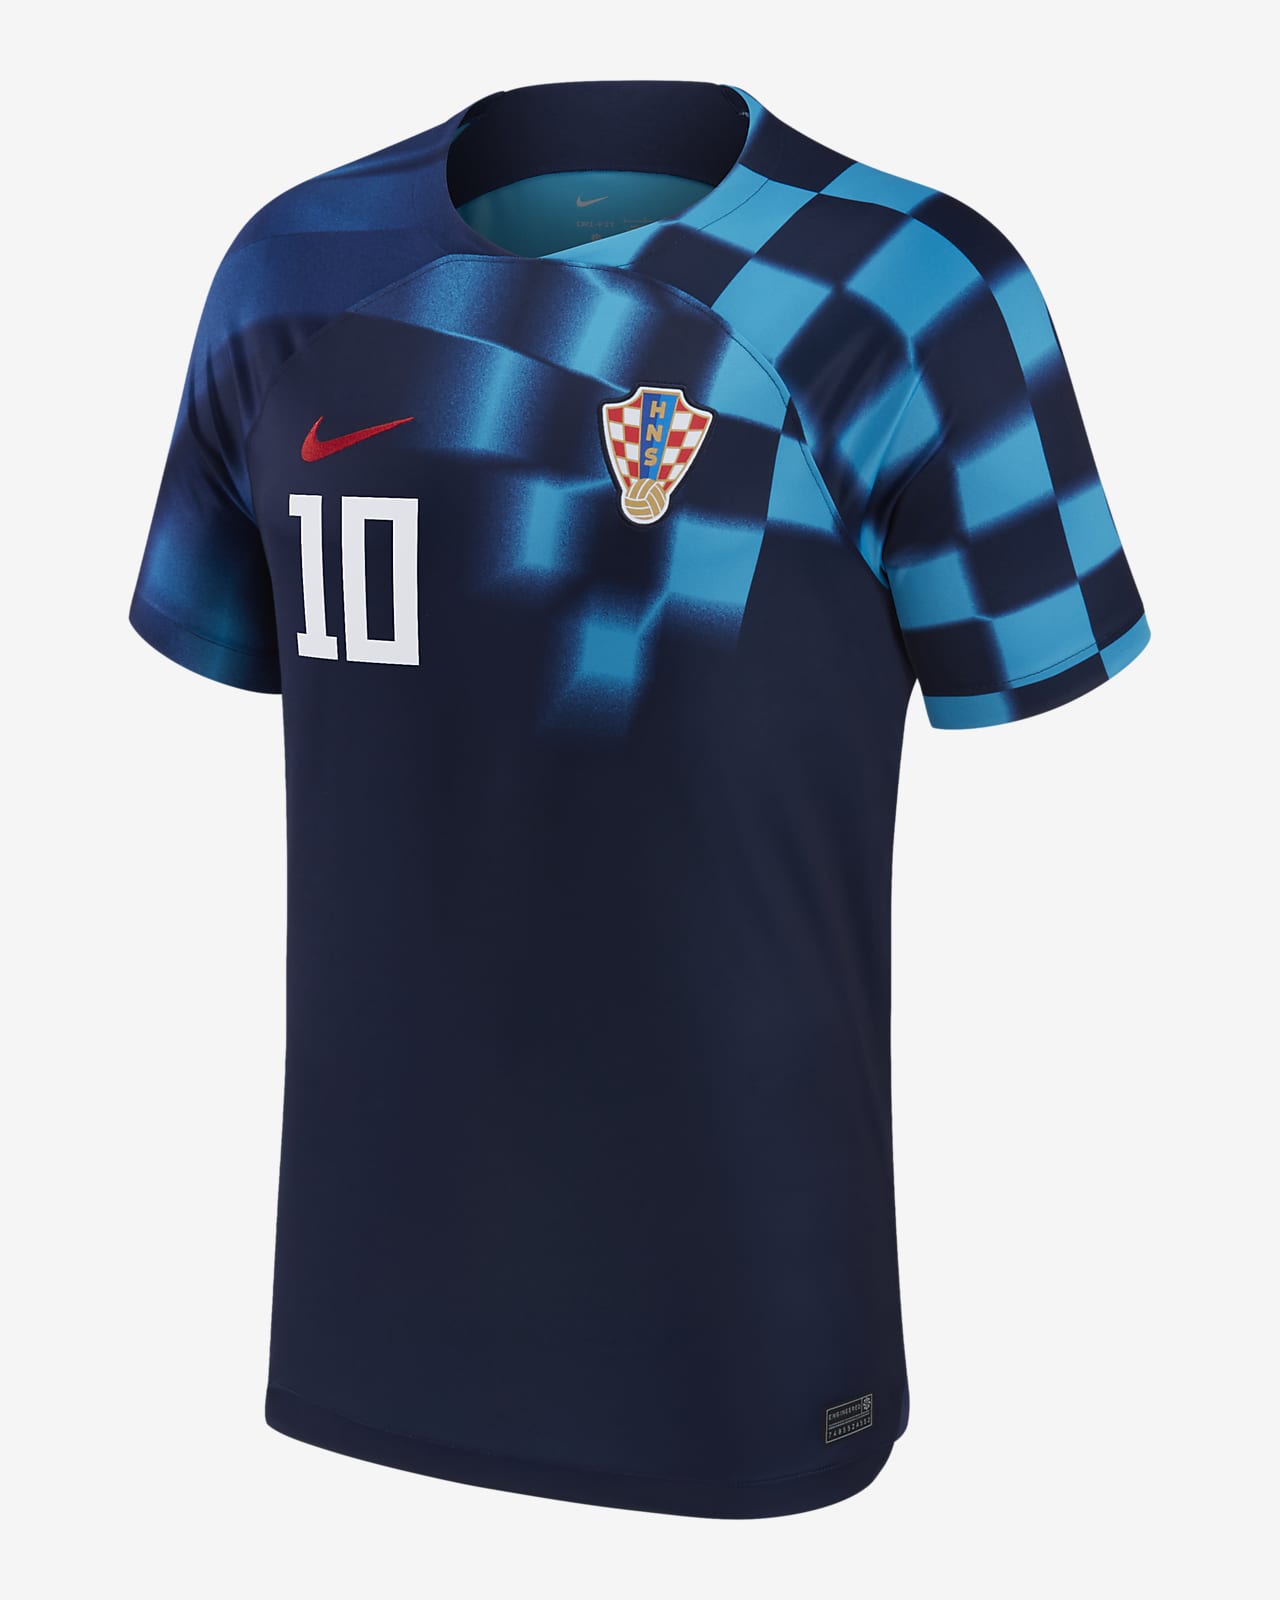 Croatian soccer rivalries' jerseys